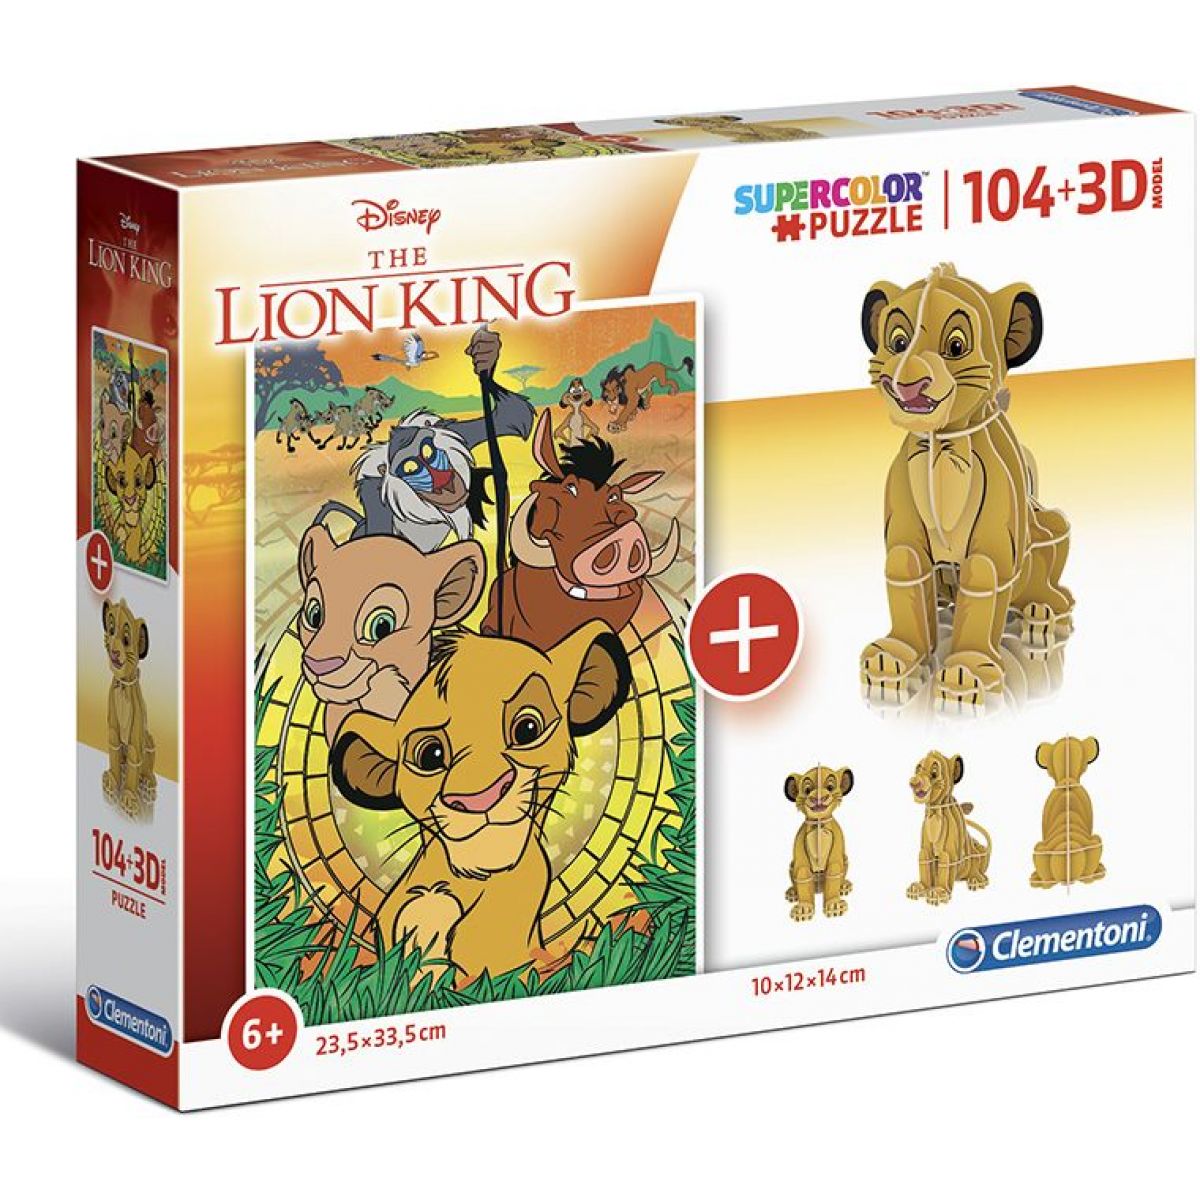 Clementoni Puzzle Supercolors 104 dielikov 3D model Lion King